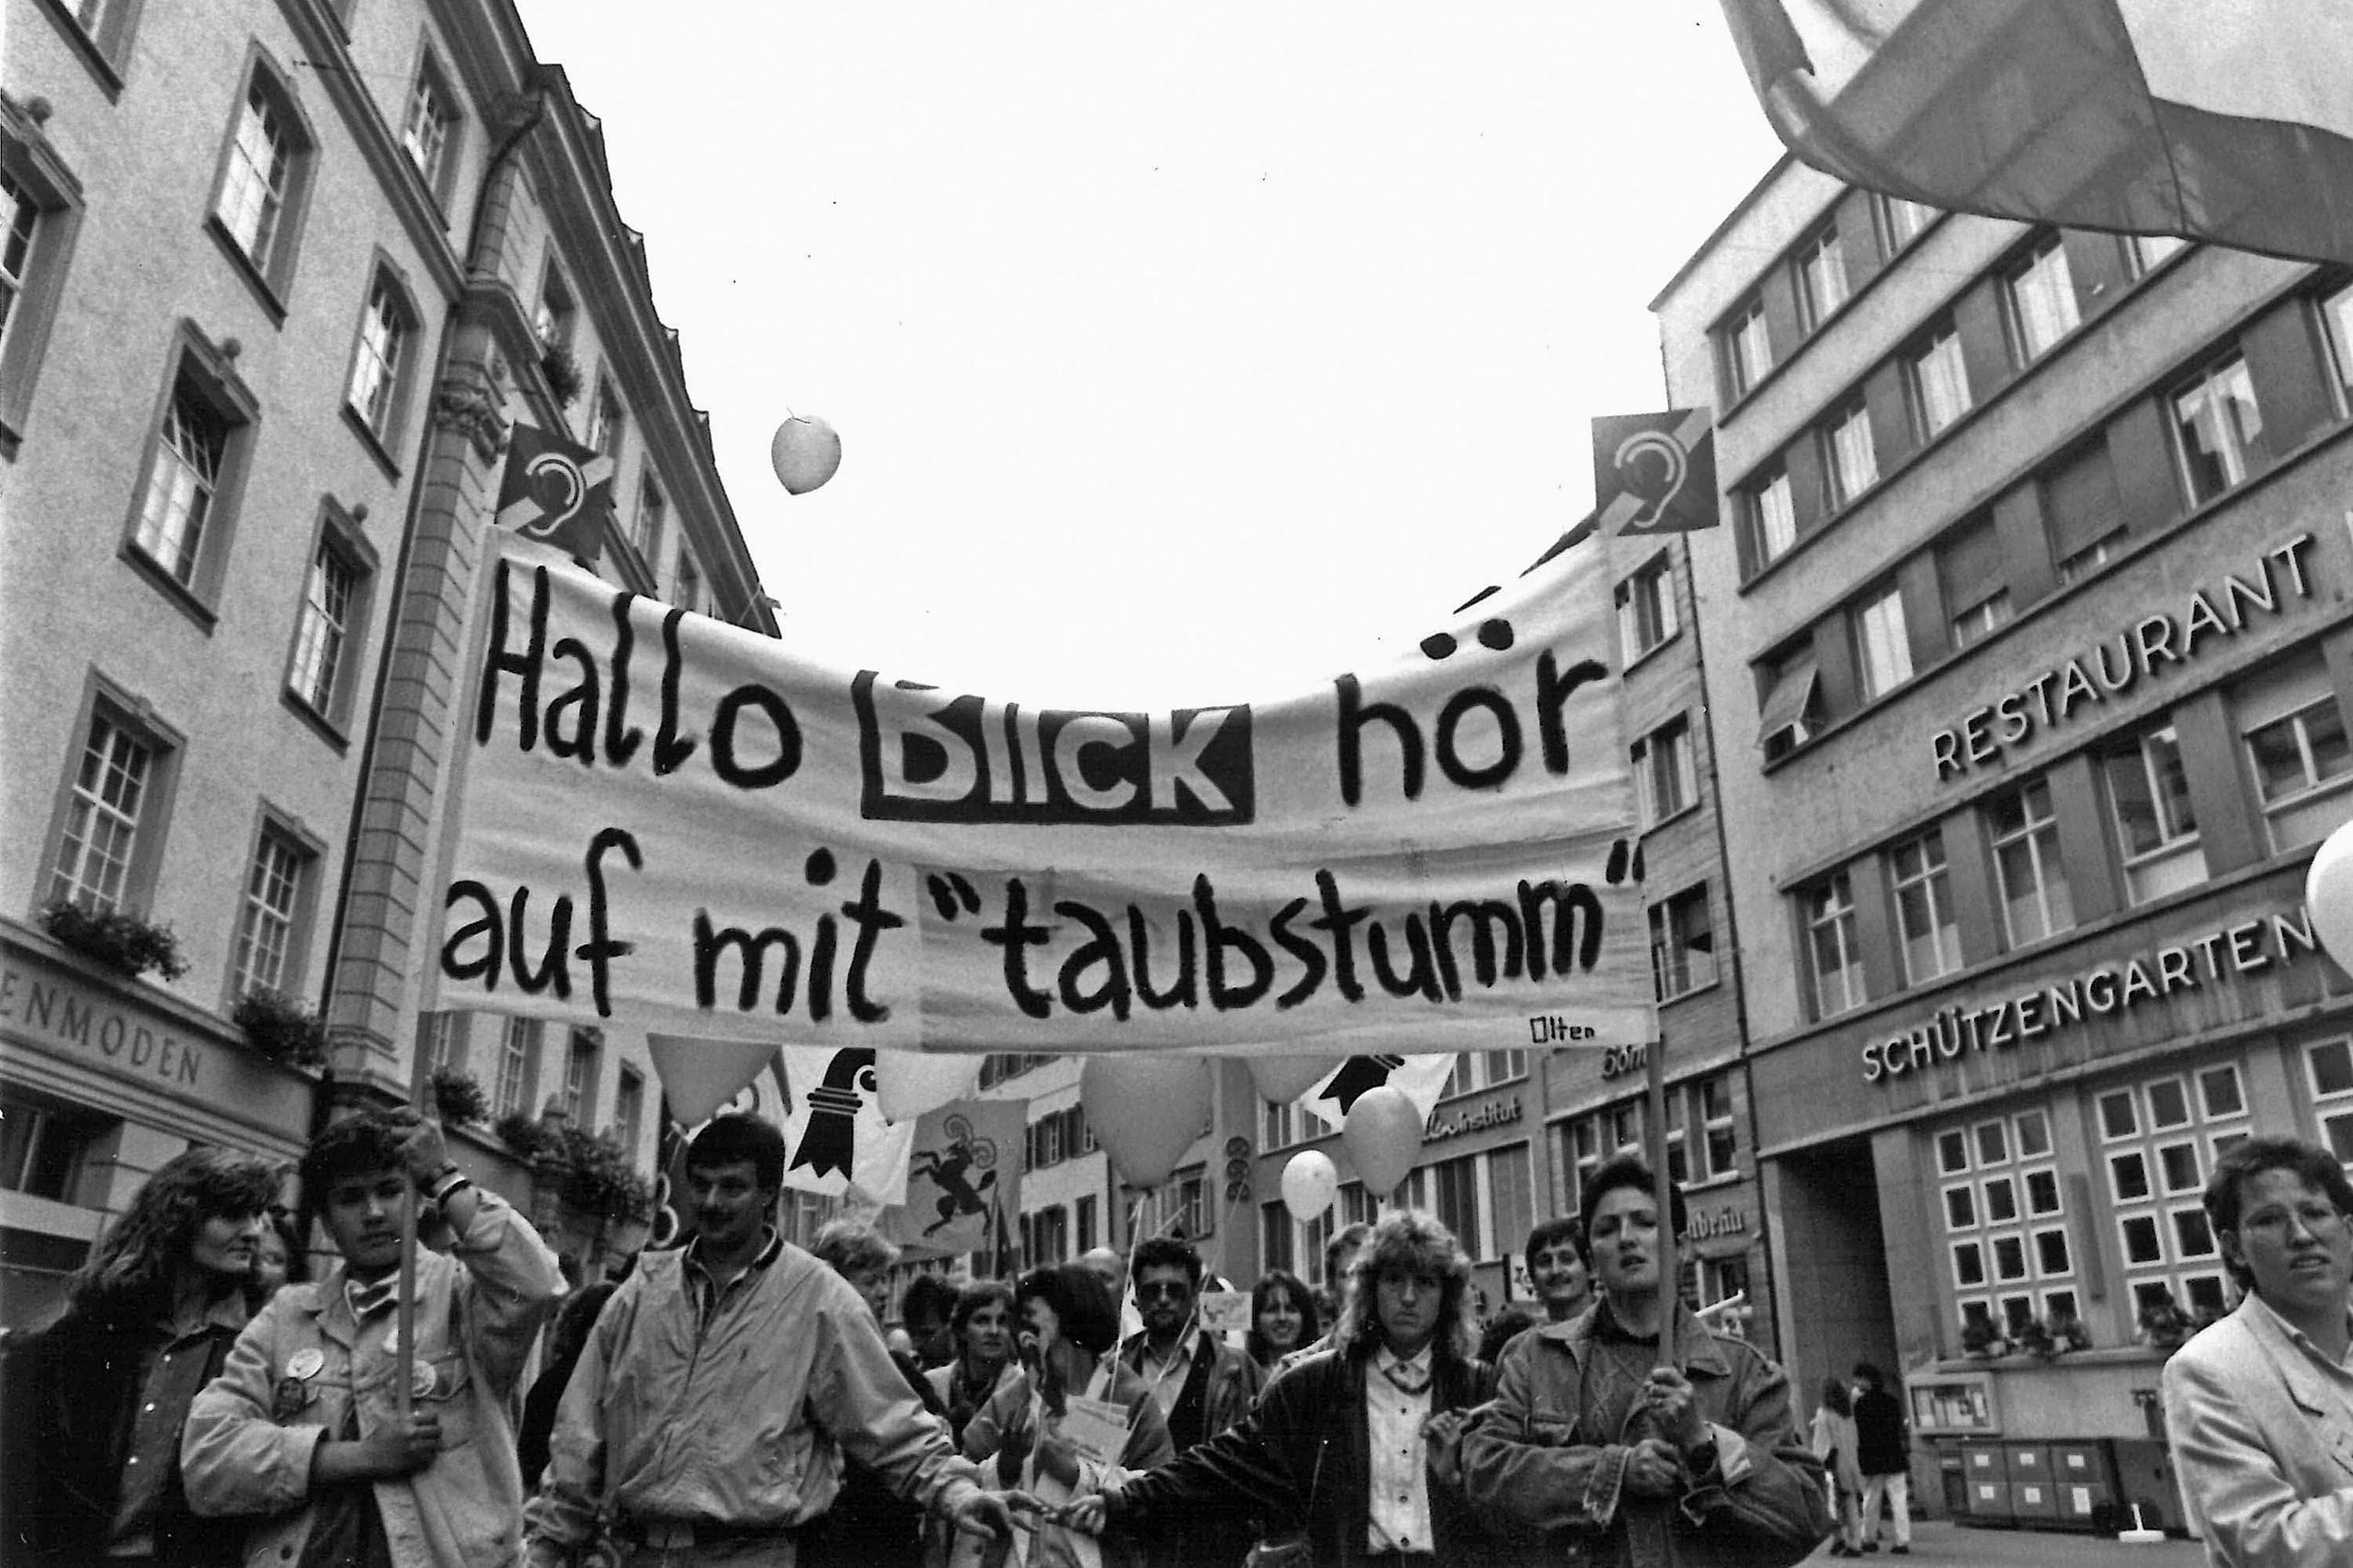 1991年，瑞士聖加侖在全國語言障礙人士日之際進行了大規模聲援遊行。他們針對瑞士紙媒《一瞥報》(Blick)使用“聾啞人”措辭的做法加以猛烈抨擊和抗議。